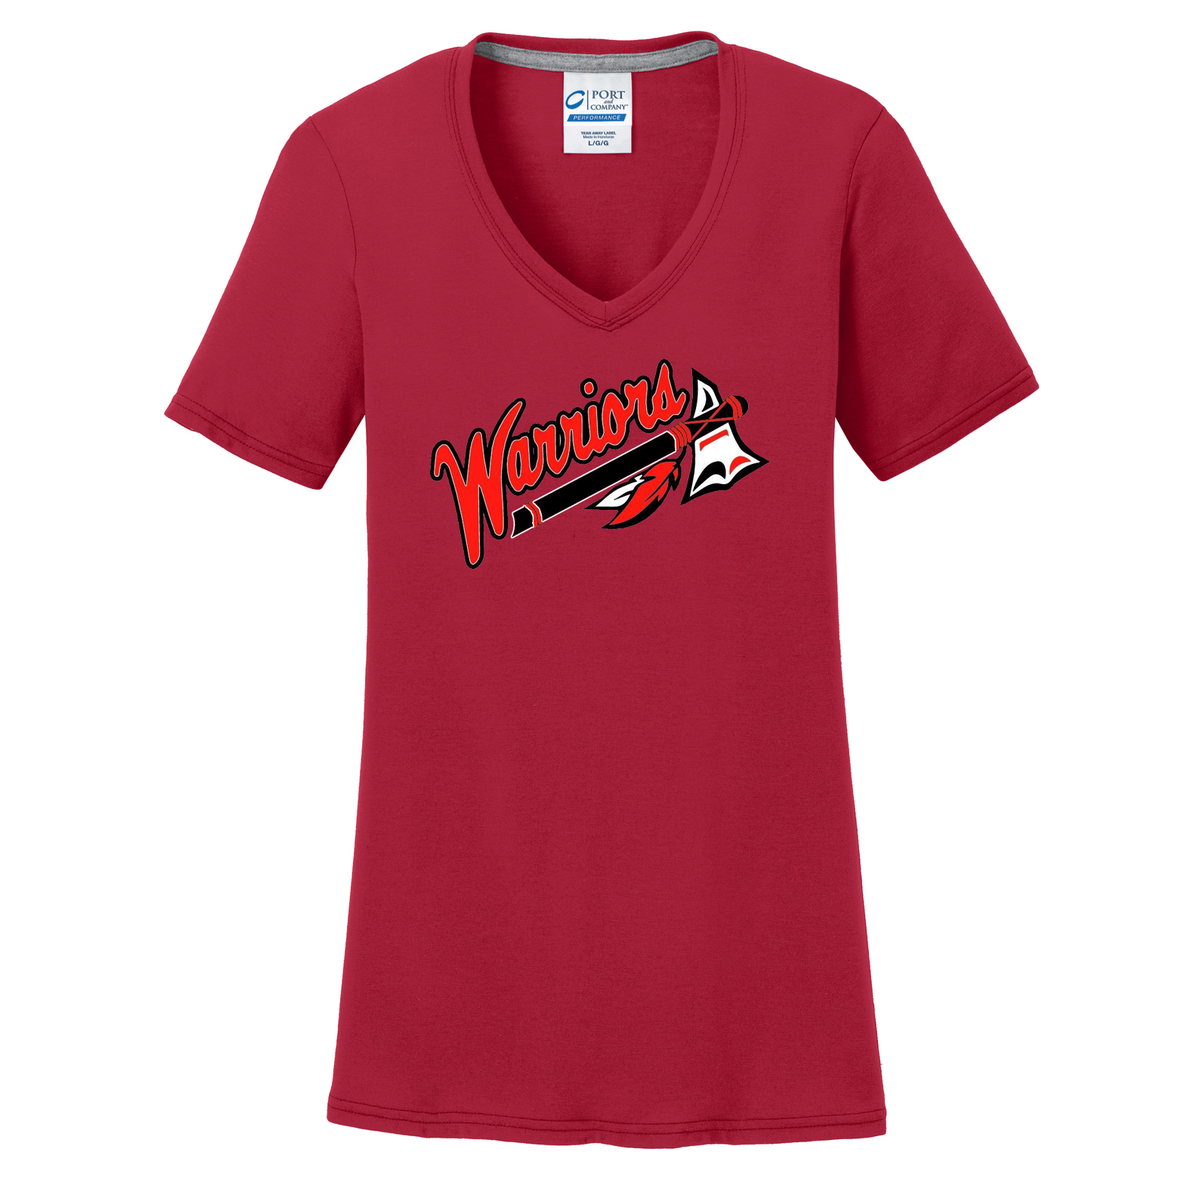 Dothan Warriors Softball Women's T-Shirt